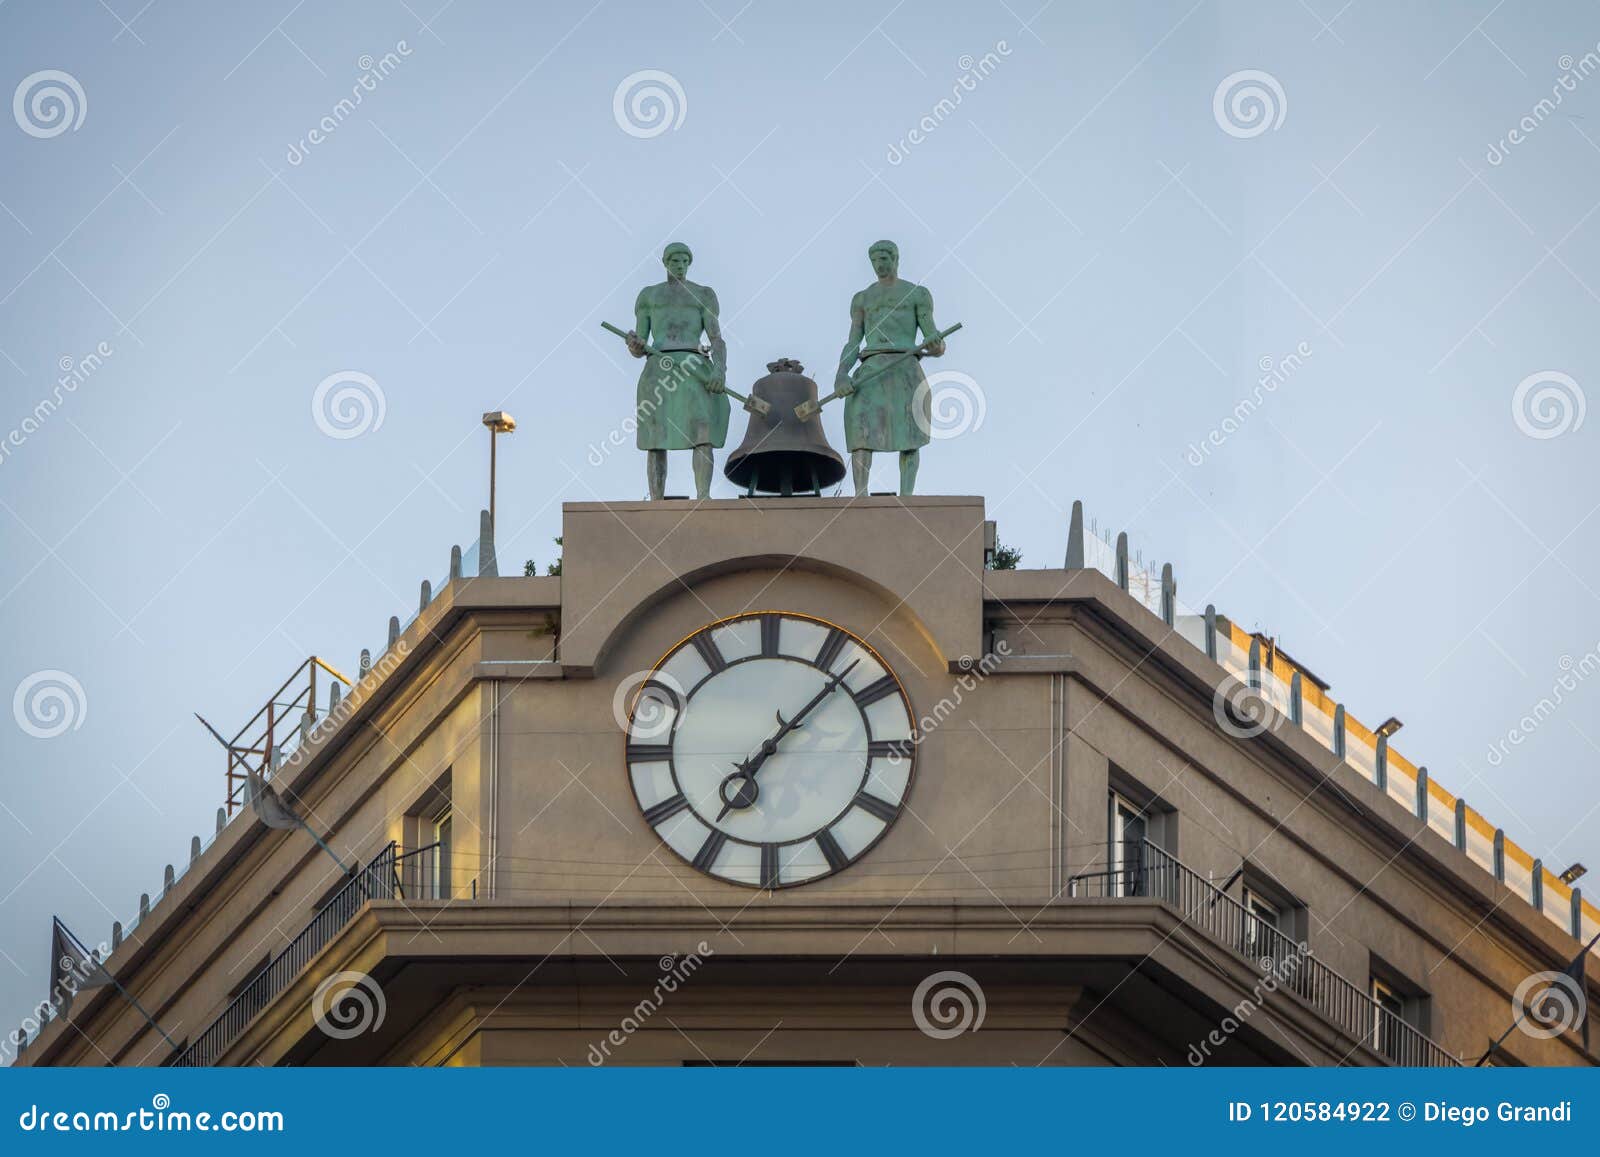 clock detail of council of magistrates of the nation - consejo de la magistratura de la nacion - buenos aires, argentina